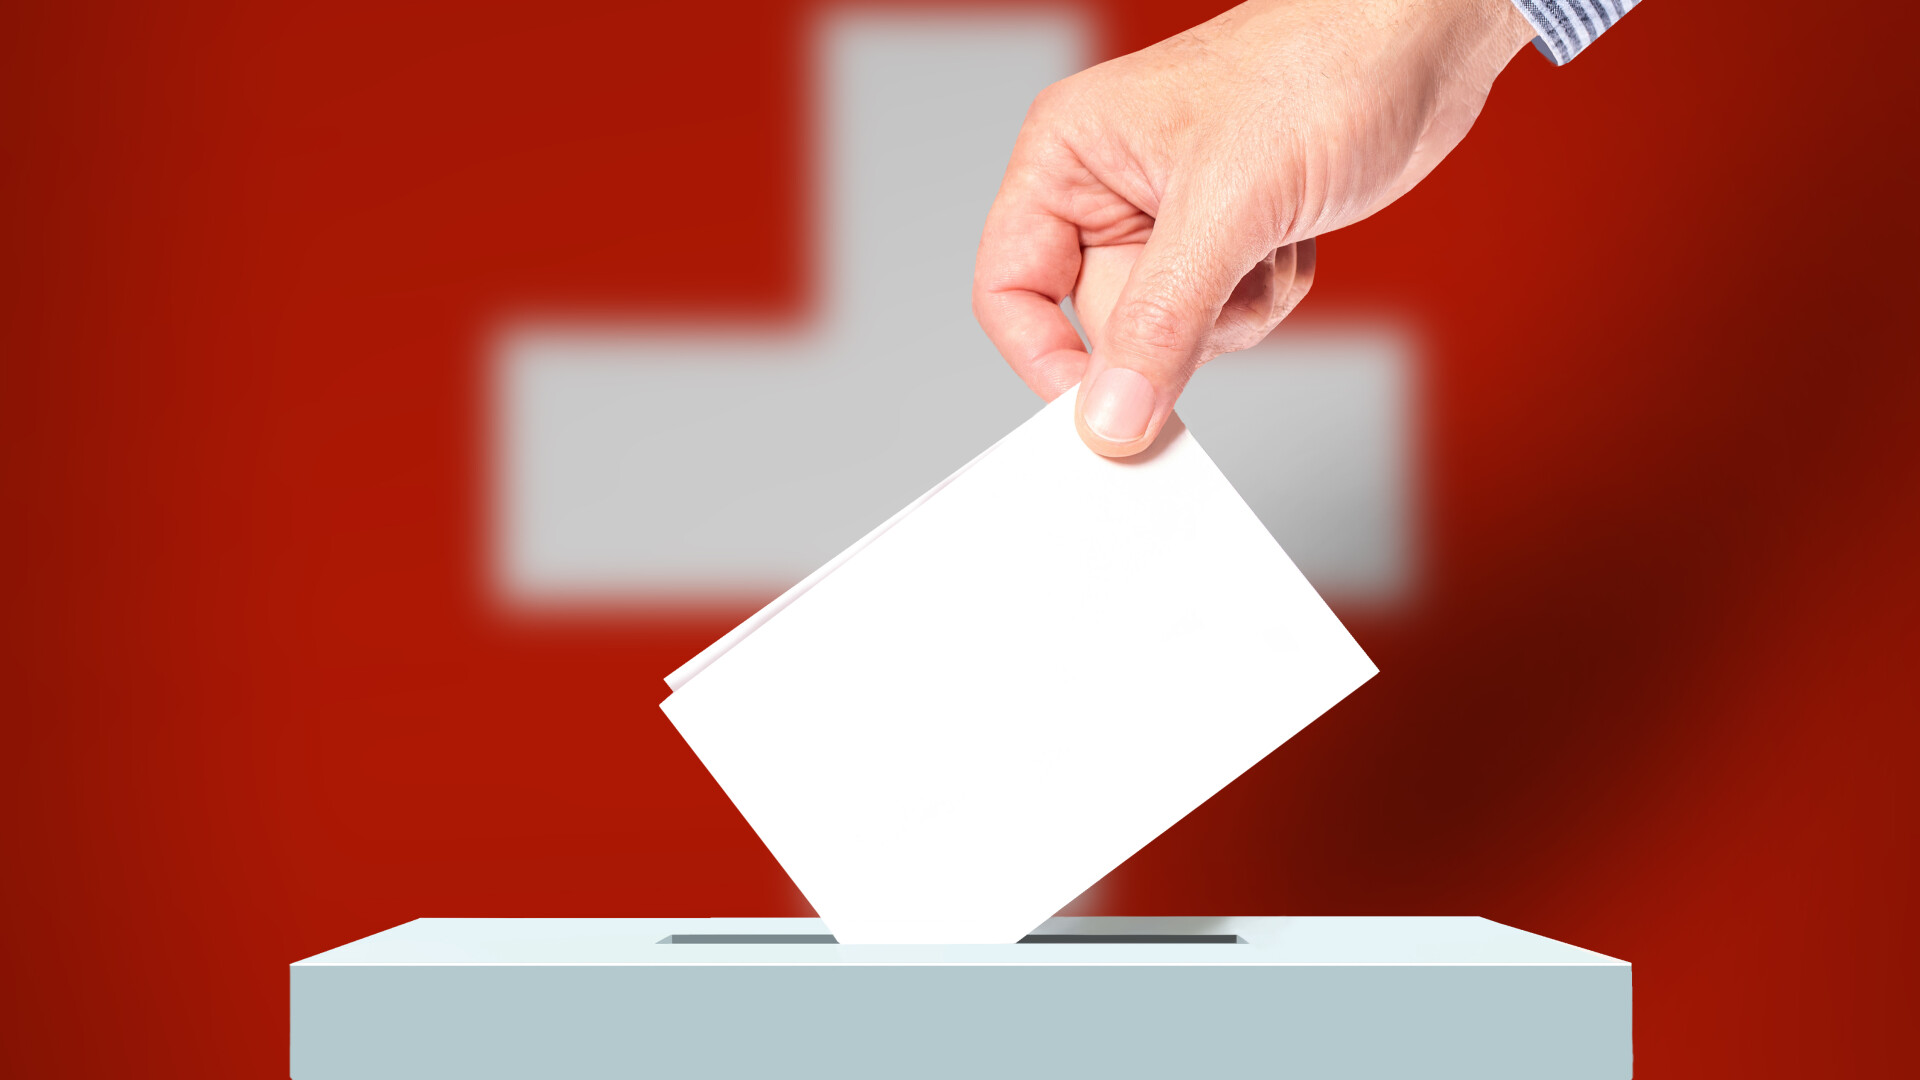 Elveţienii au respins, prin referendum, propunerea care ar fi limitat libera circulaţie cu UE